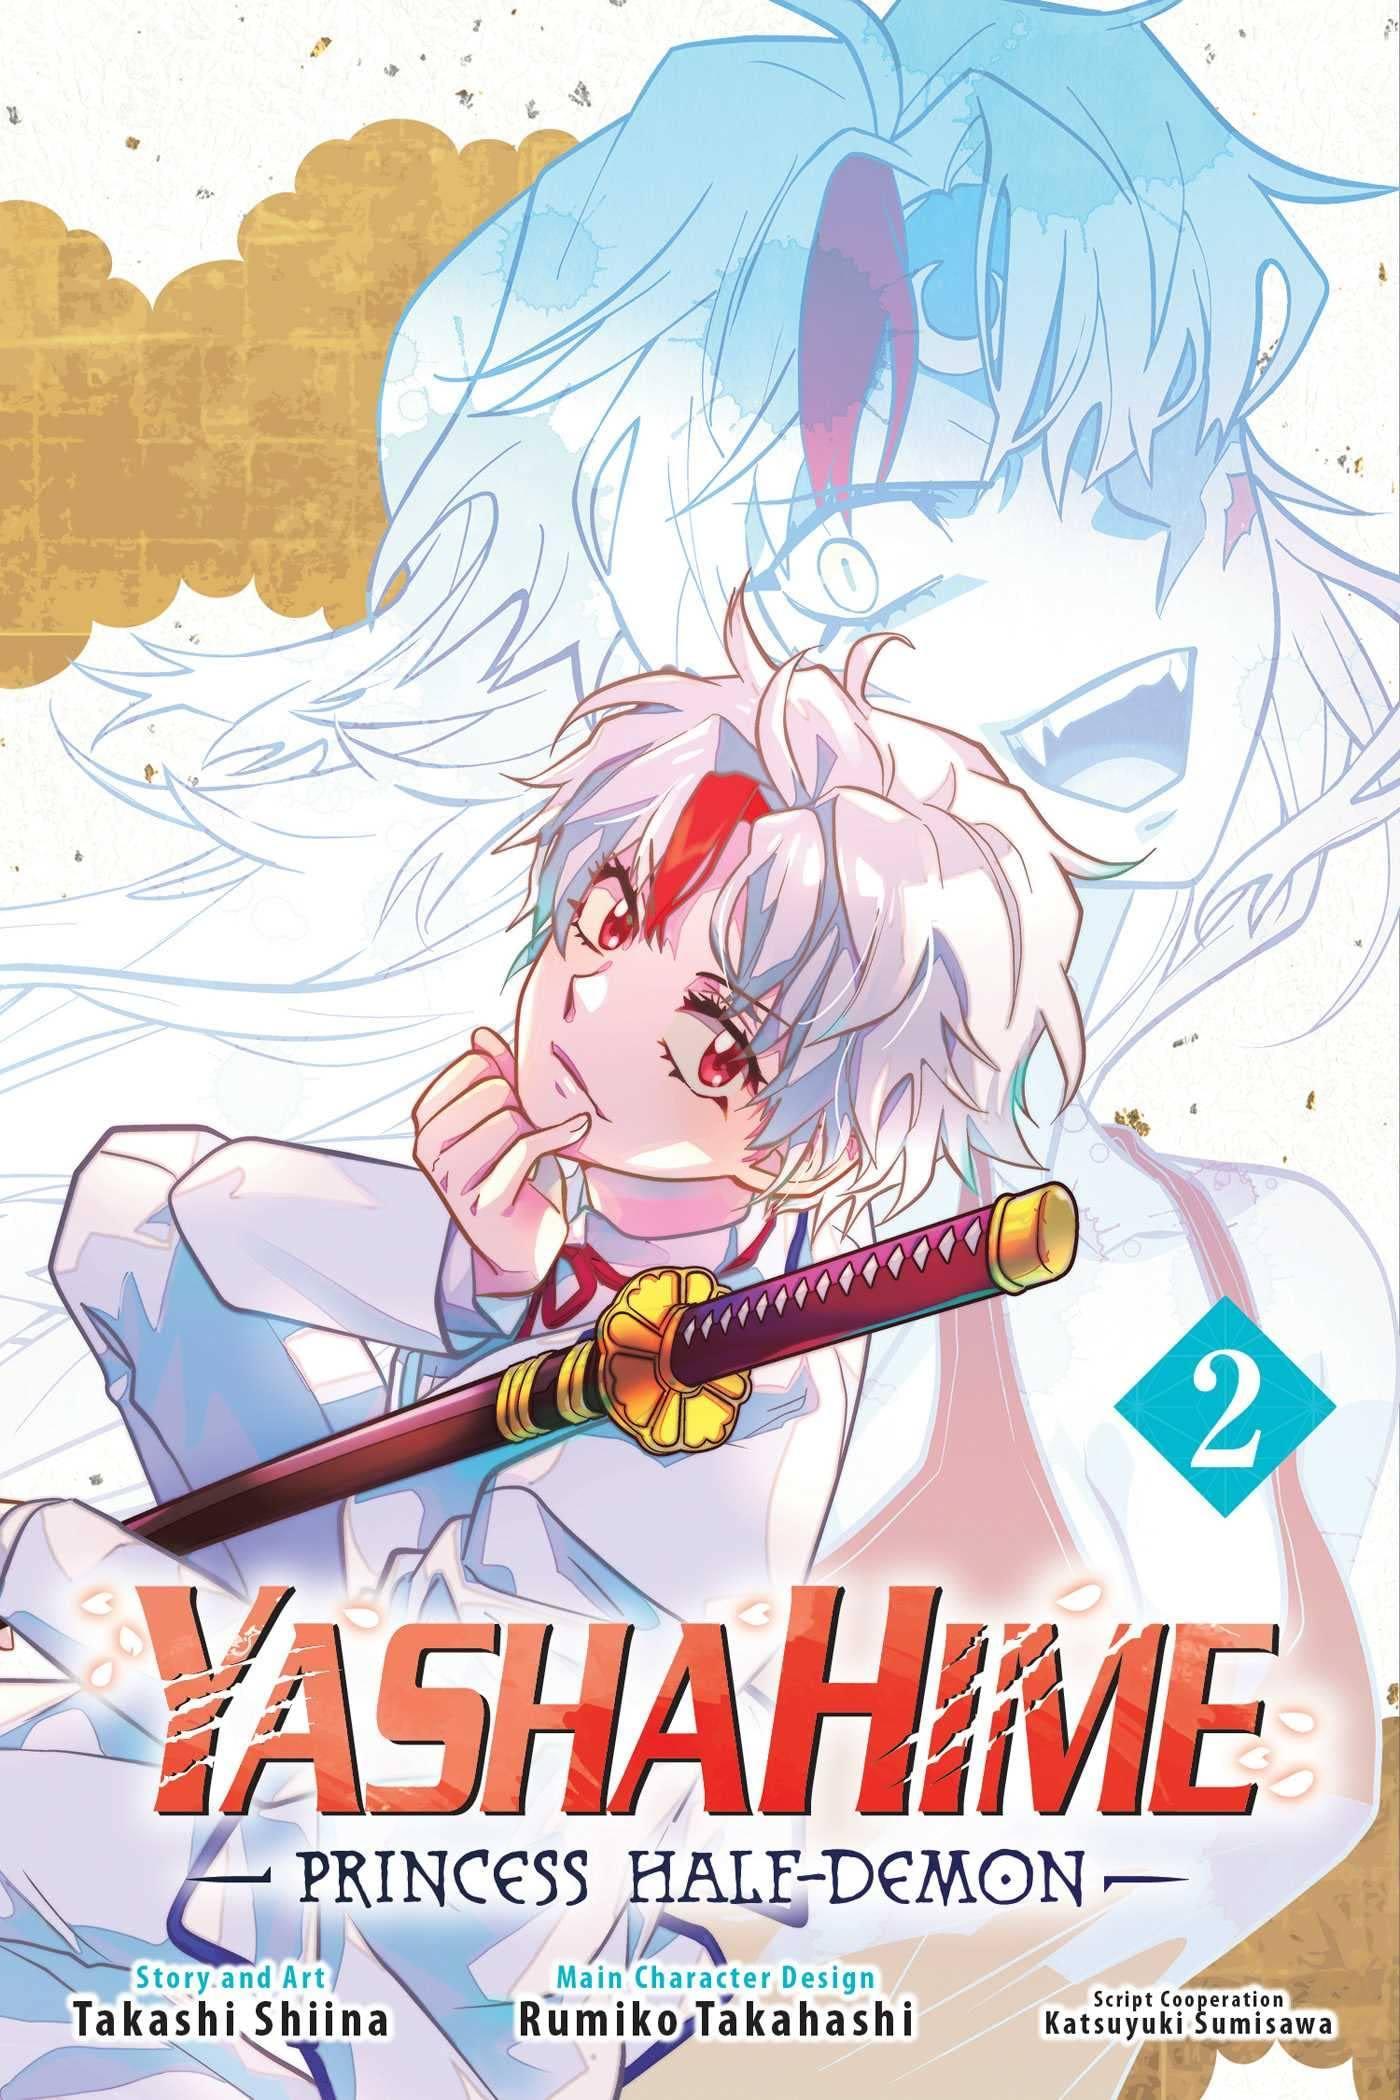 Yashahime: Princess Half-Demon (Manga) Vol. 2 - Tankobonbon